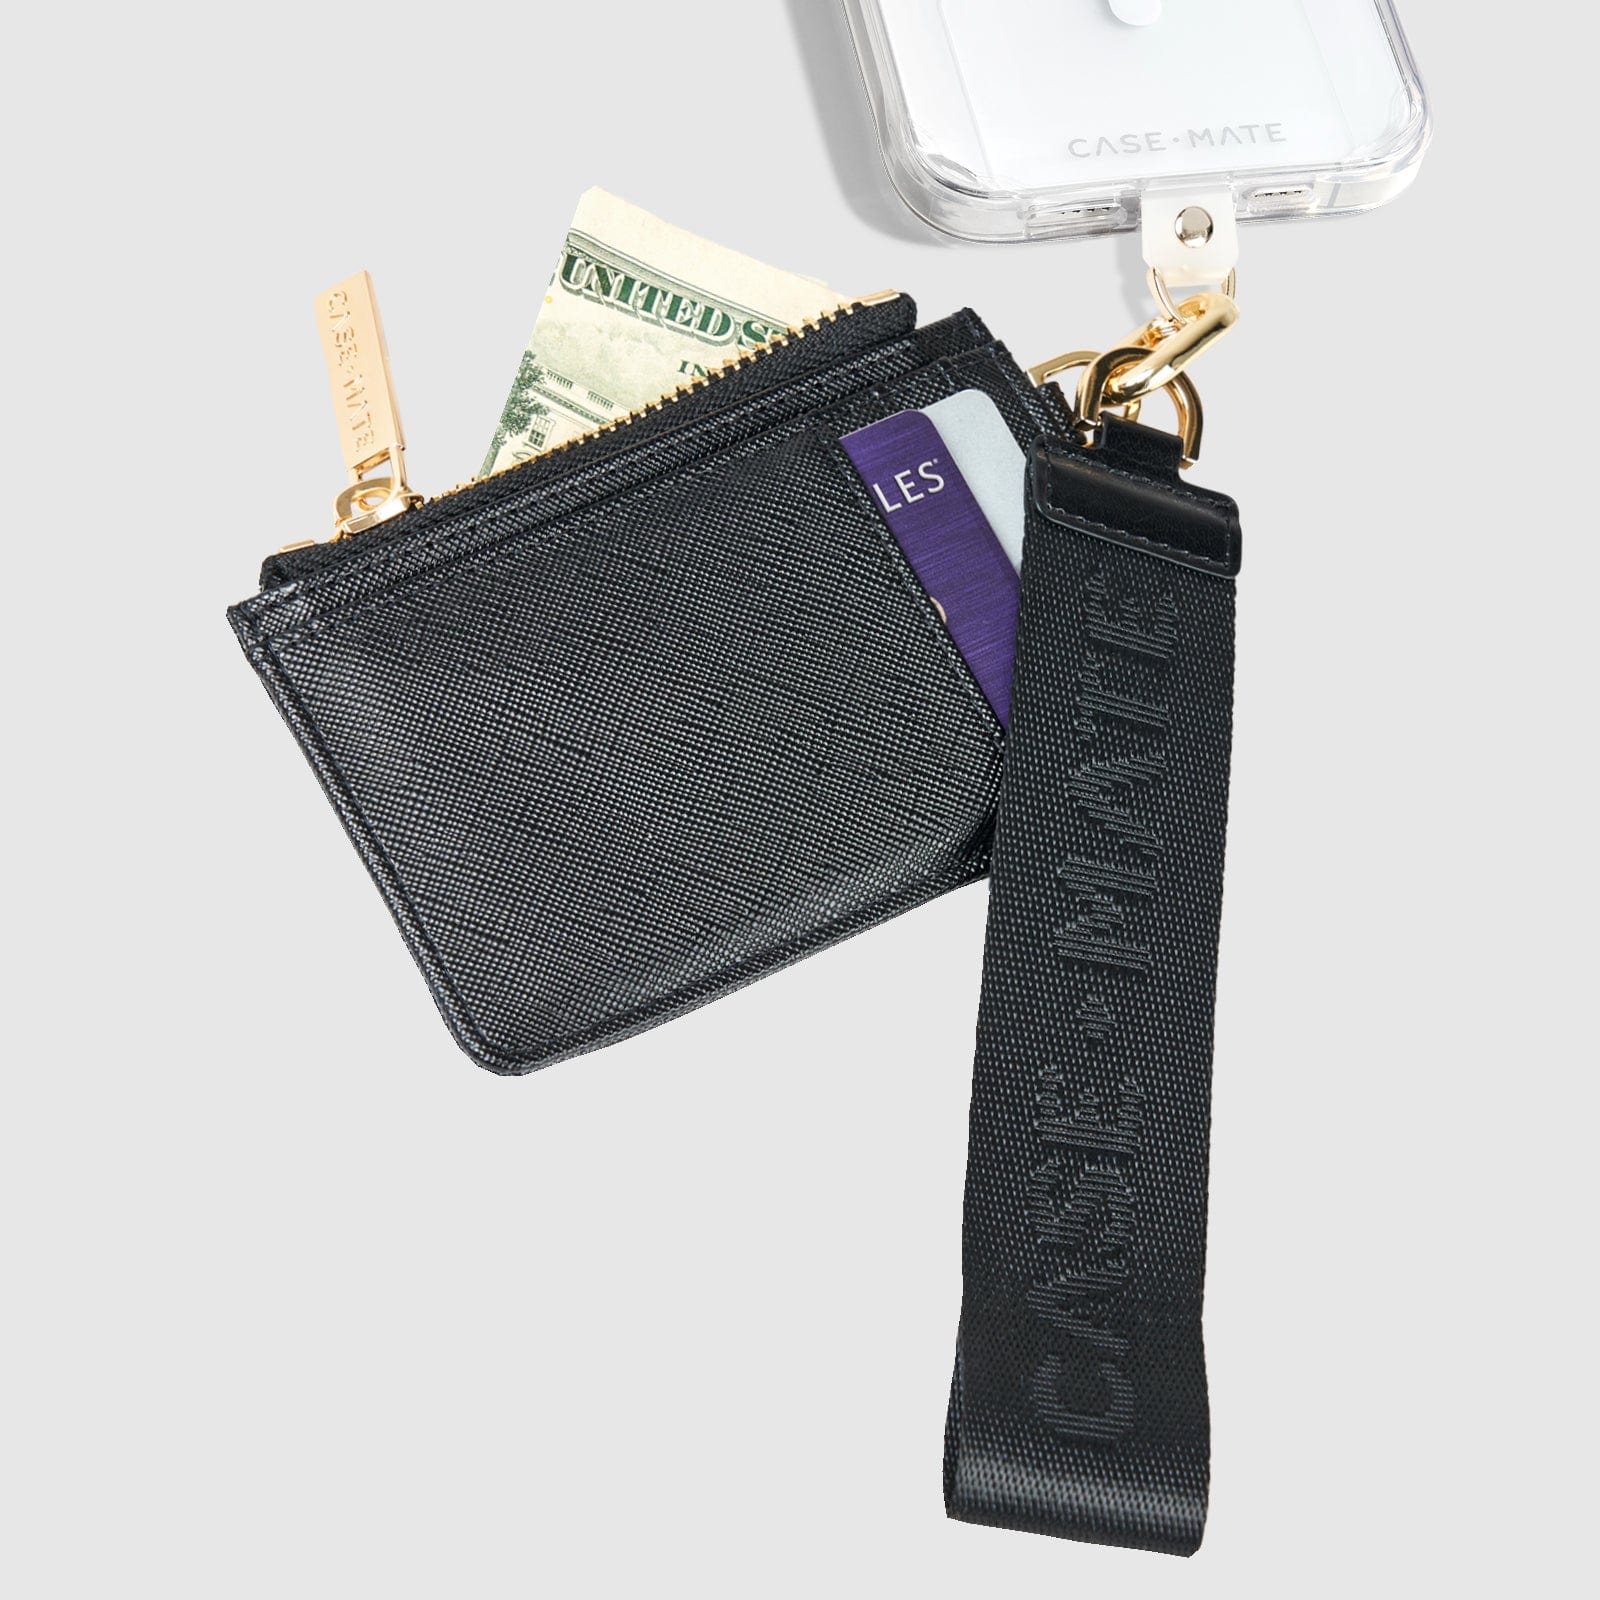 No Pockets? No Purse? No Problem! New Ways to Carry Your Phone